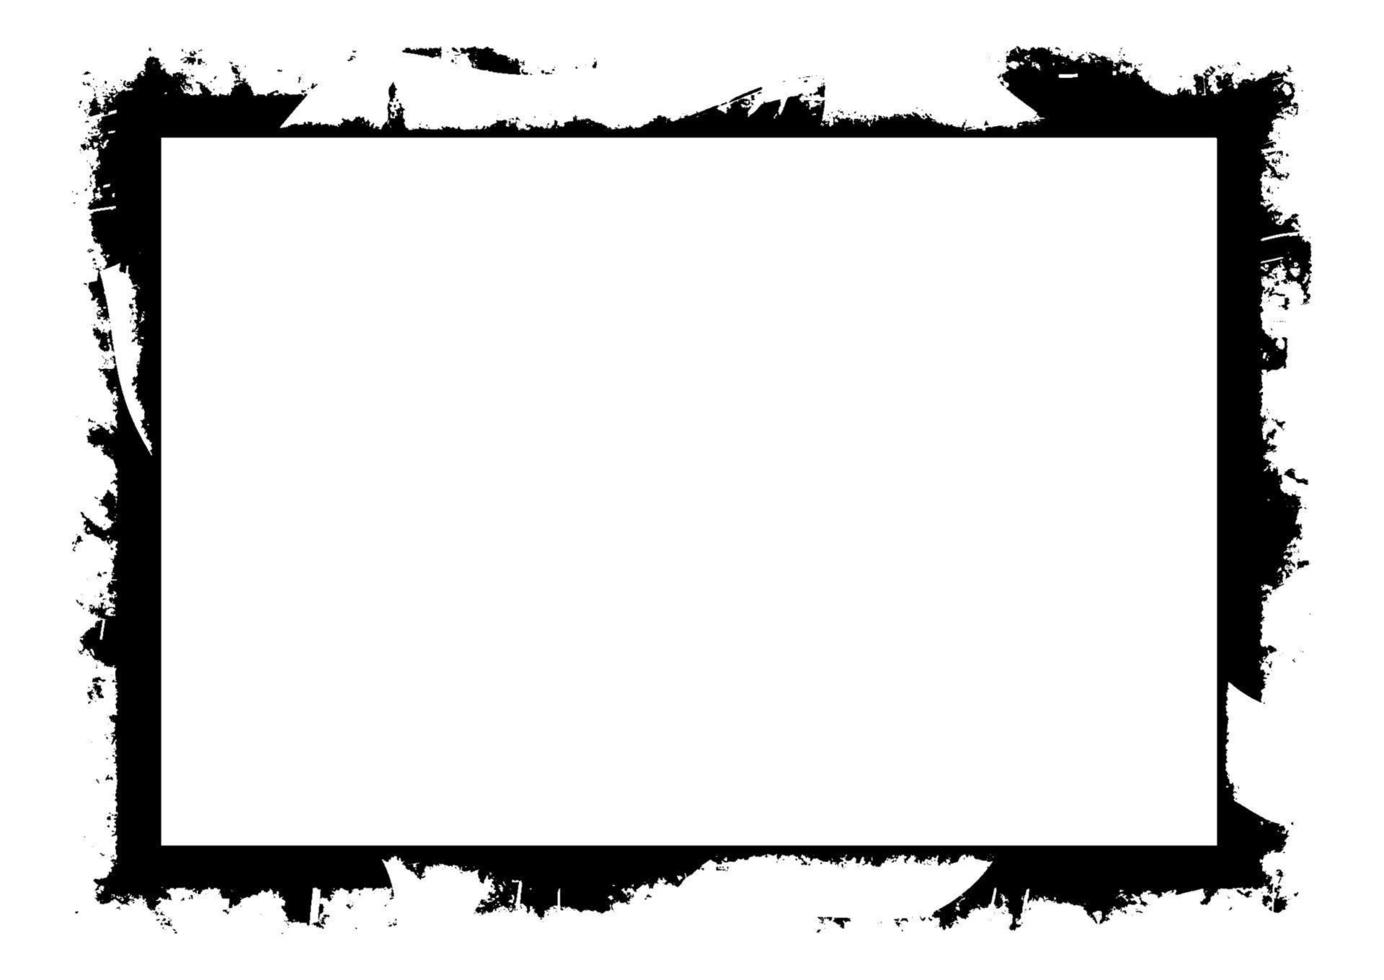 marco grunge detallado en blanco y negro vector